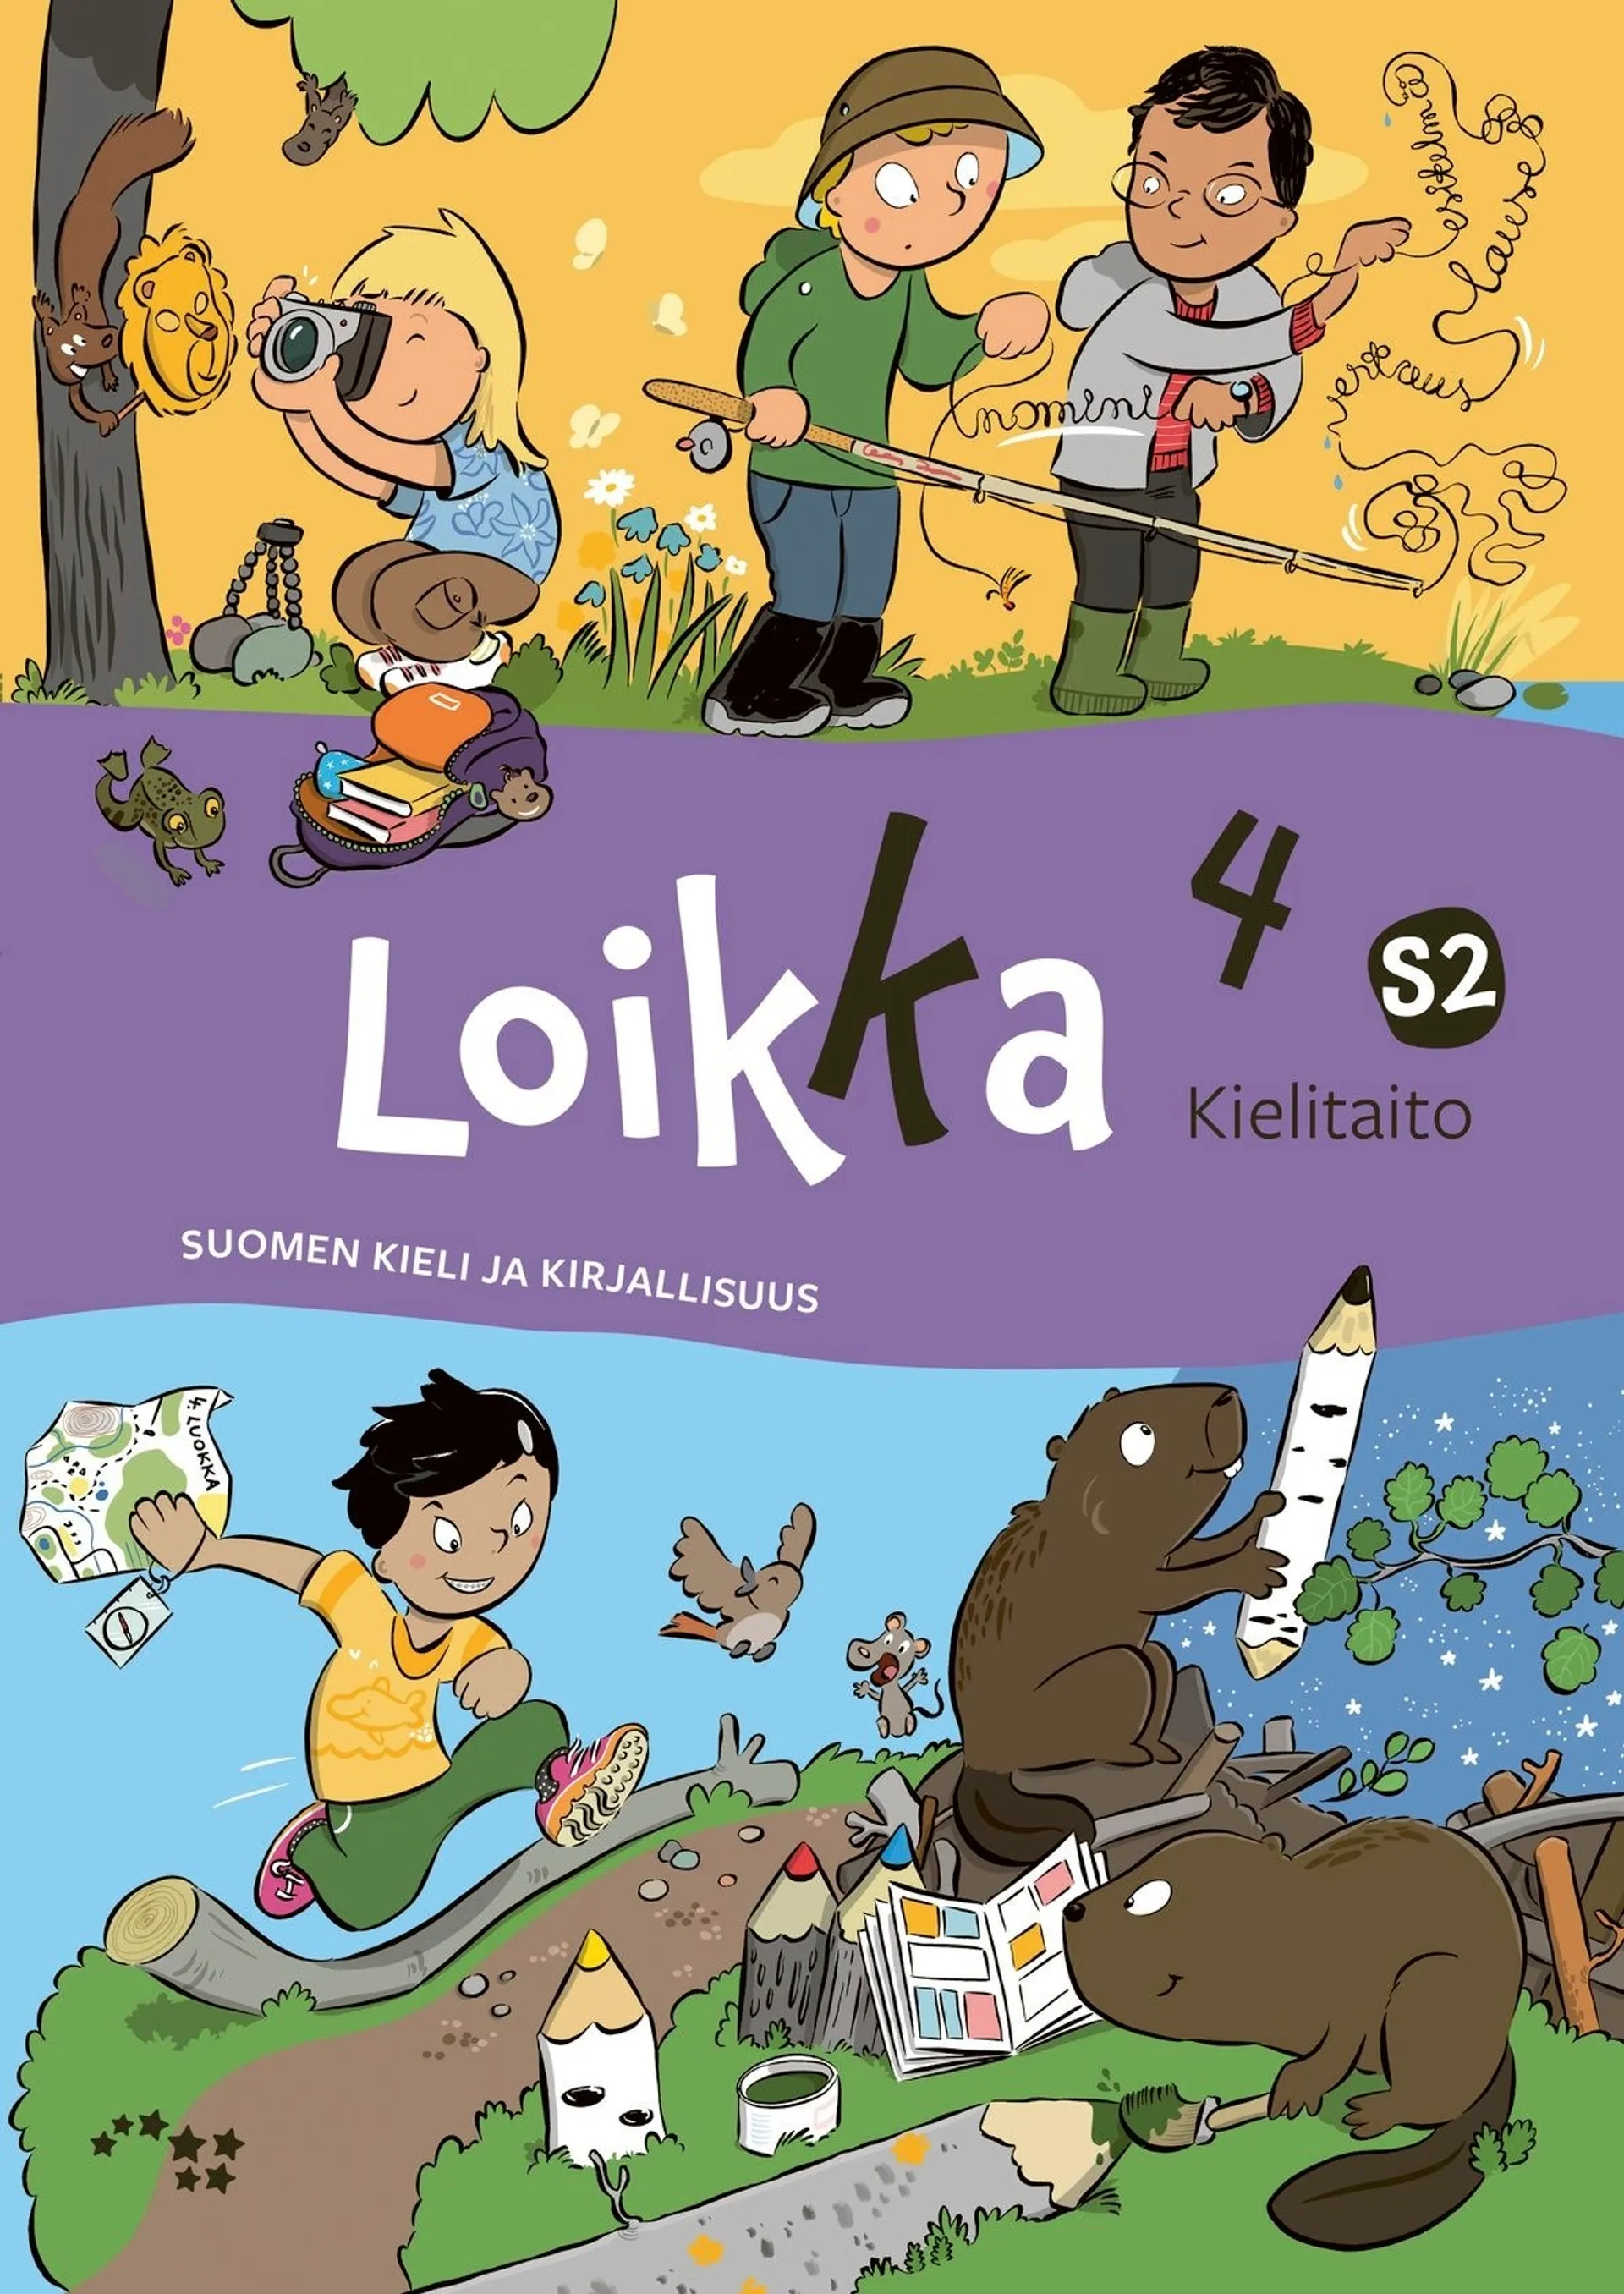 Takko, Loikka 4 Kielitaito S2 - Suomen kieli ja kirjallisuus